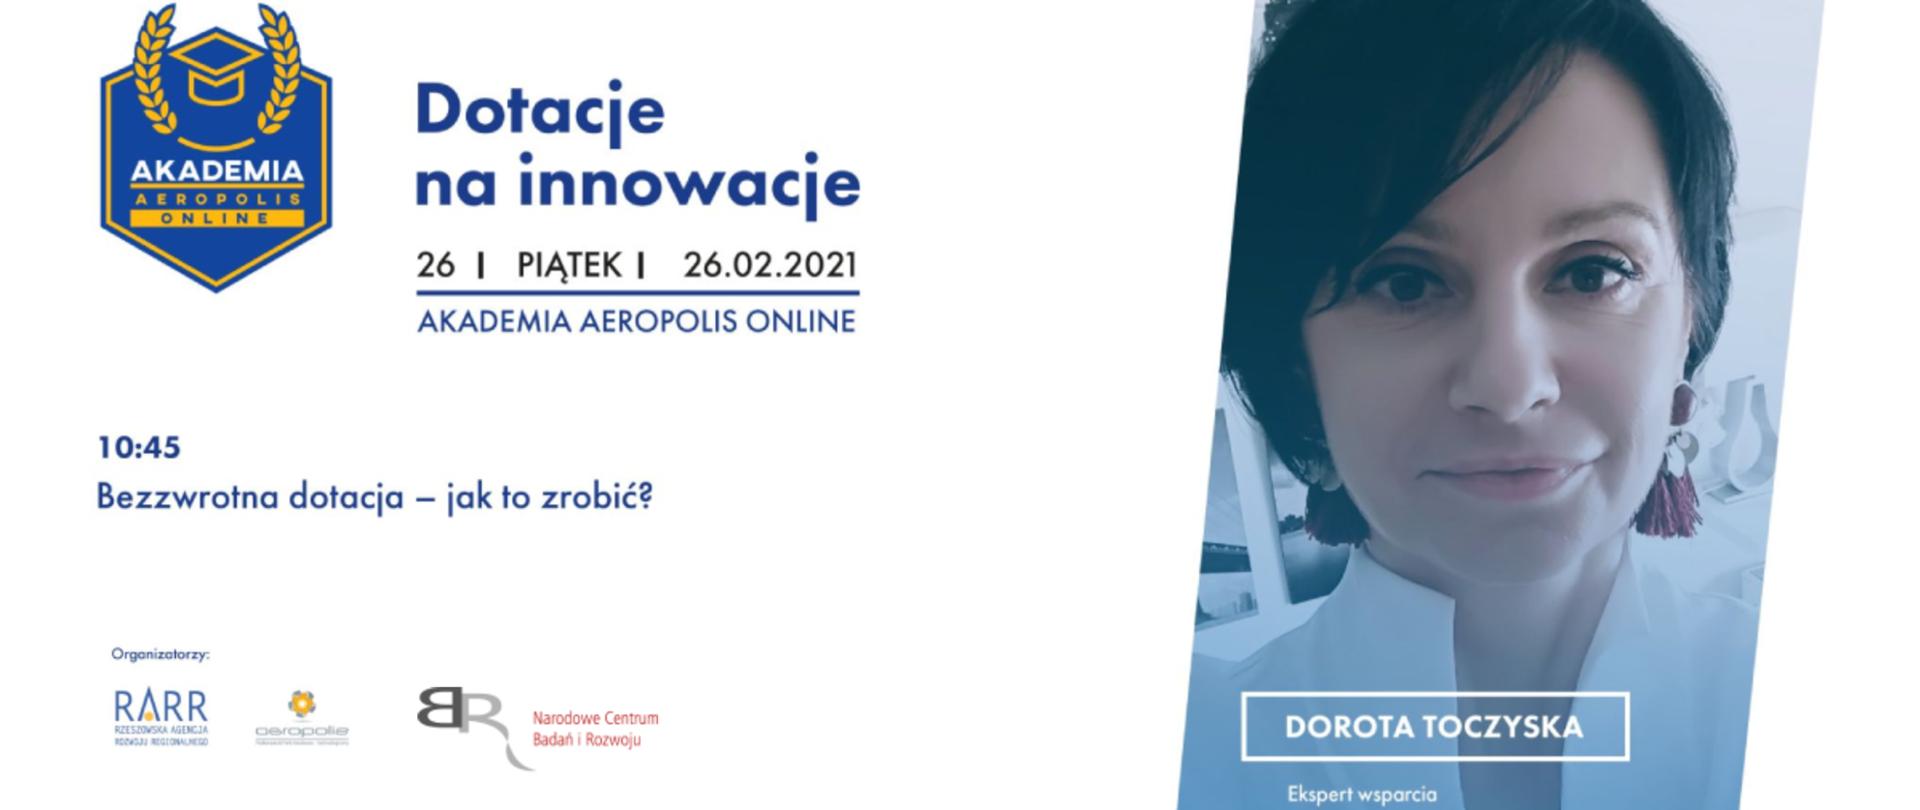 dotacje_na_innowacje_ekspert_Dorota_Toczyska